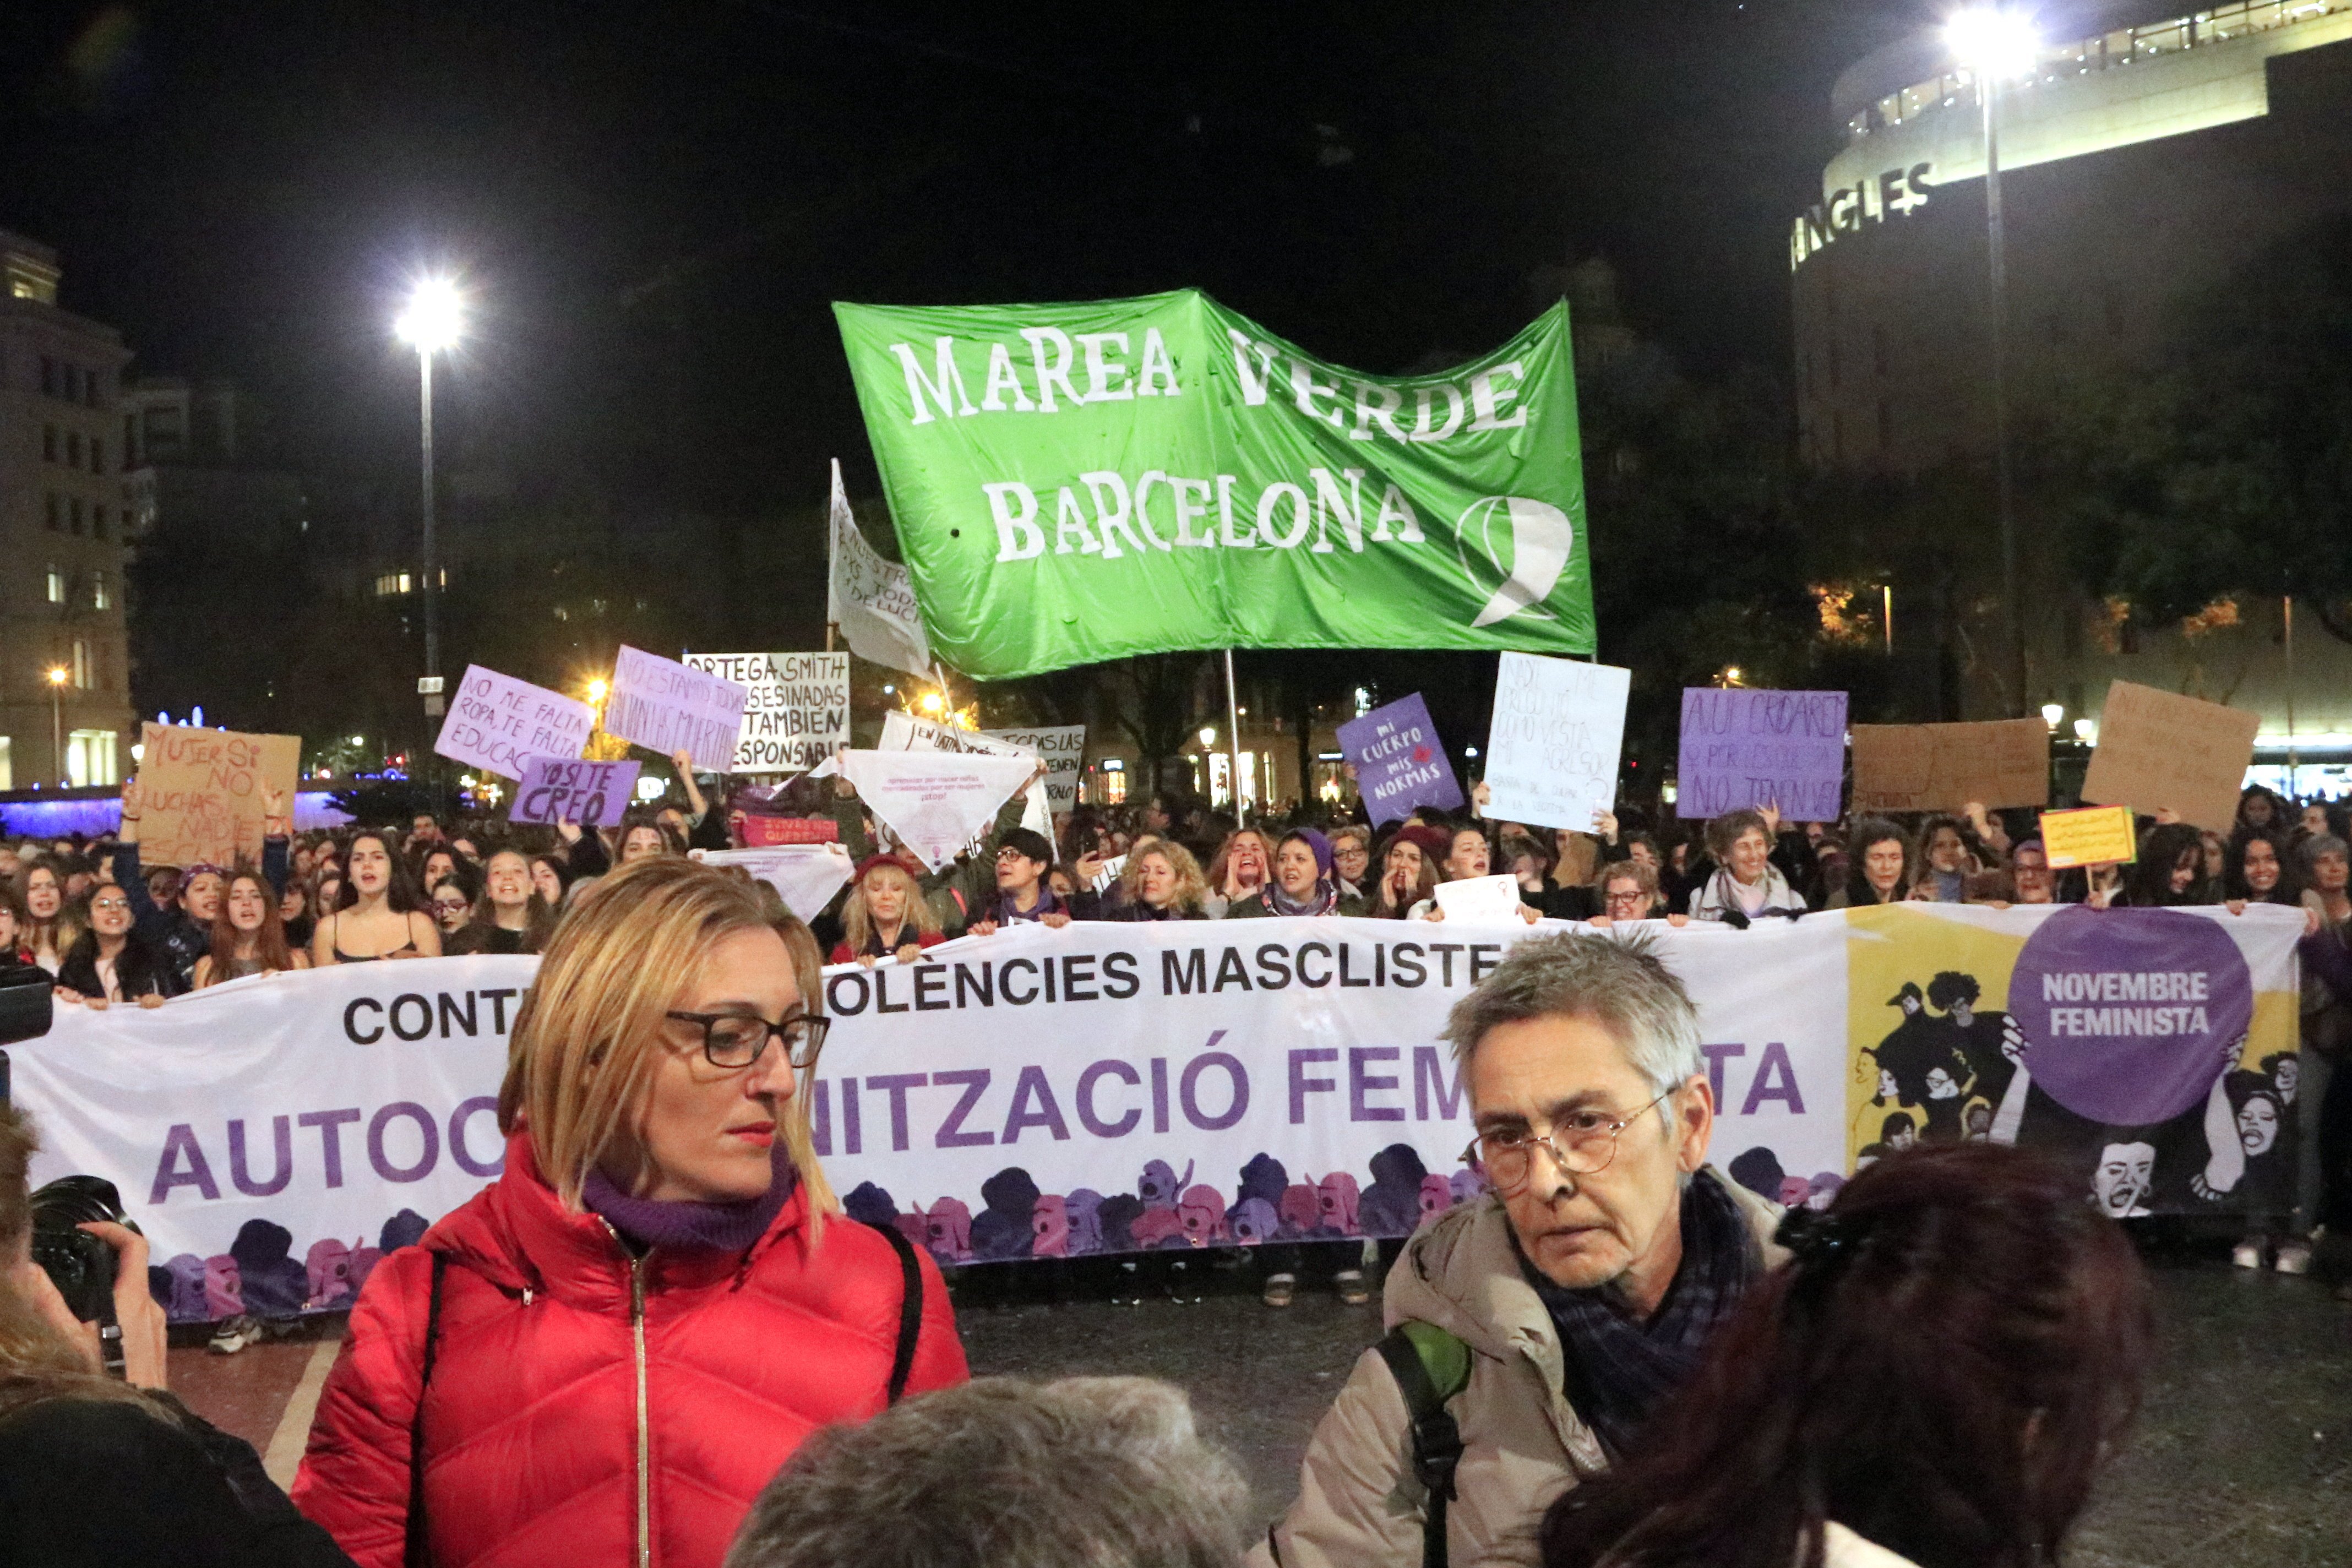 Milers de dones es manifesten arreu de Catalunya contra les violències masclistes